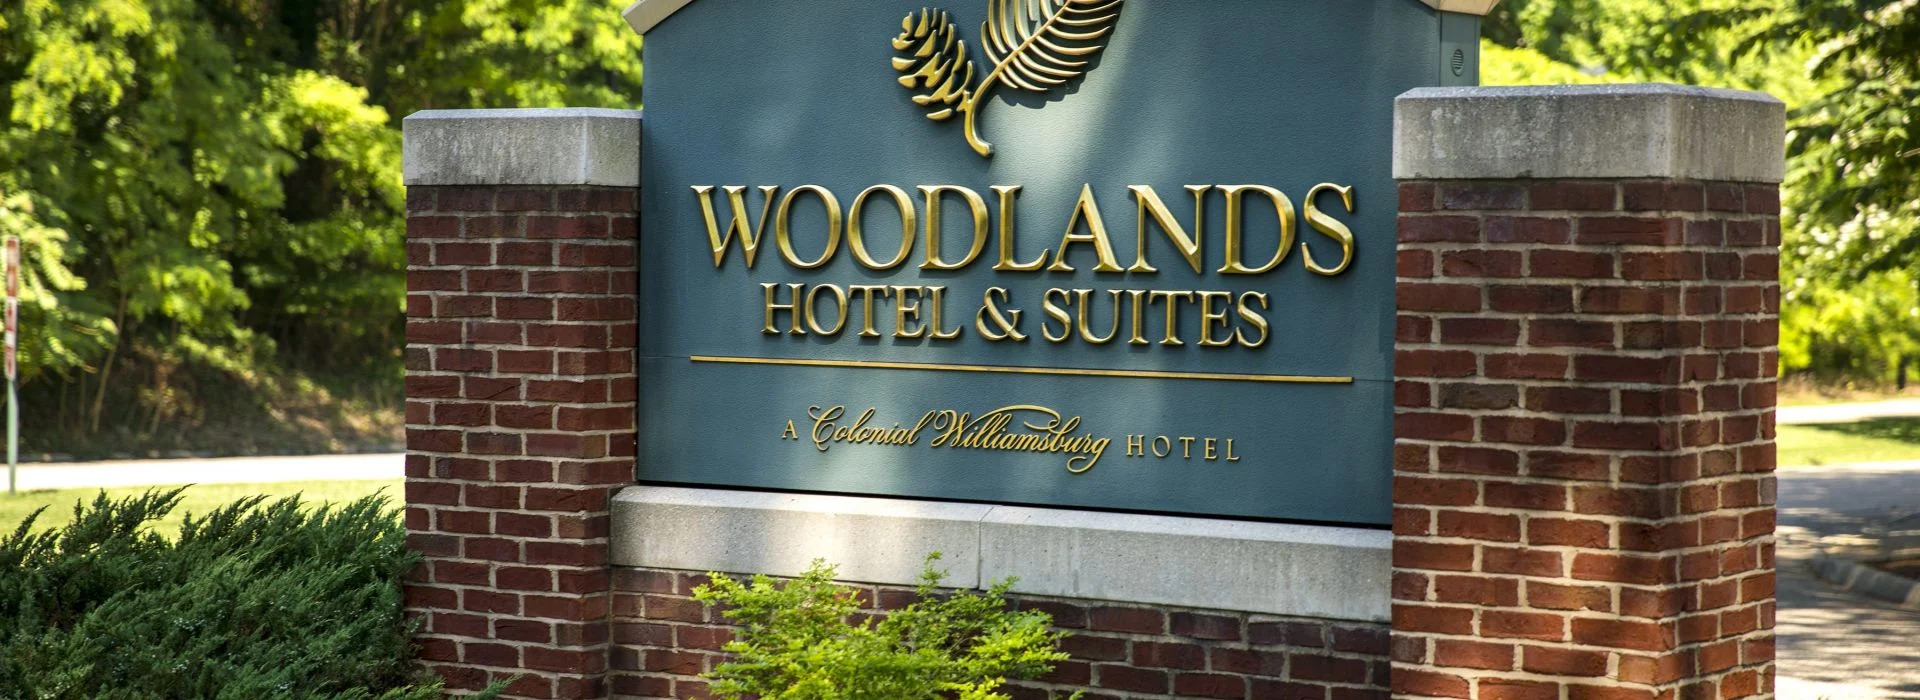 Photo of Williamsburg Woodlands Hotel & Suites, Williamsburg, VA